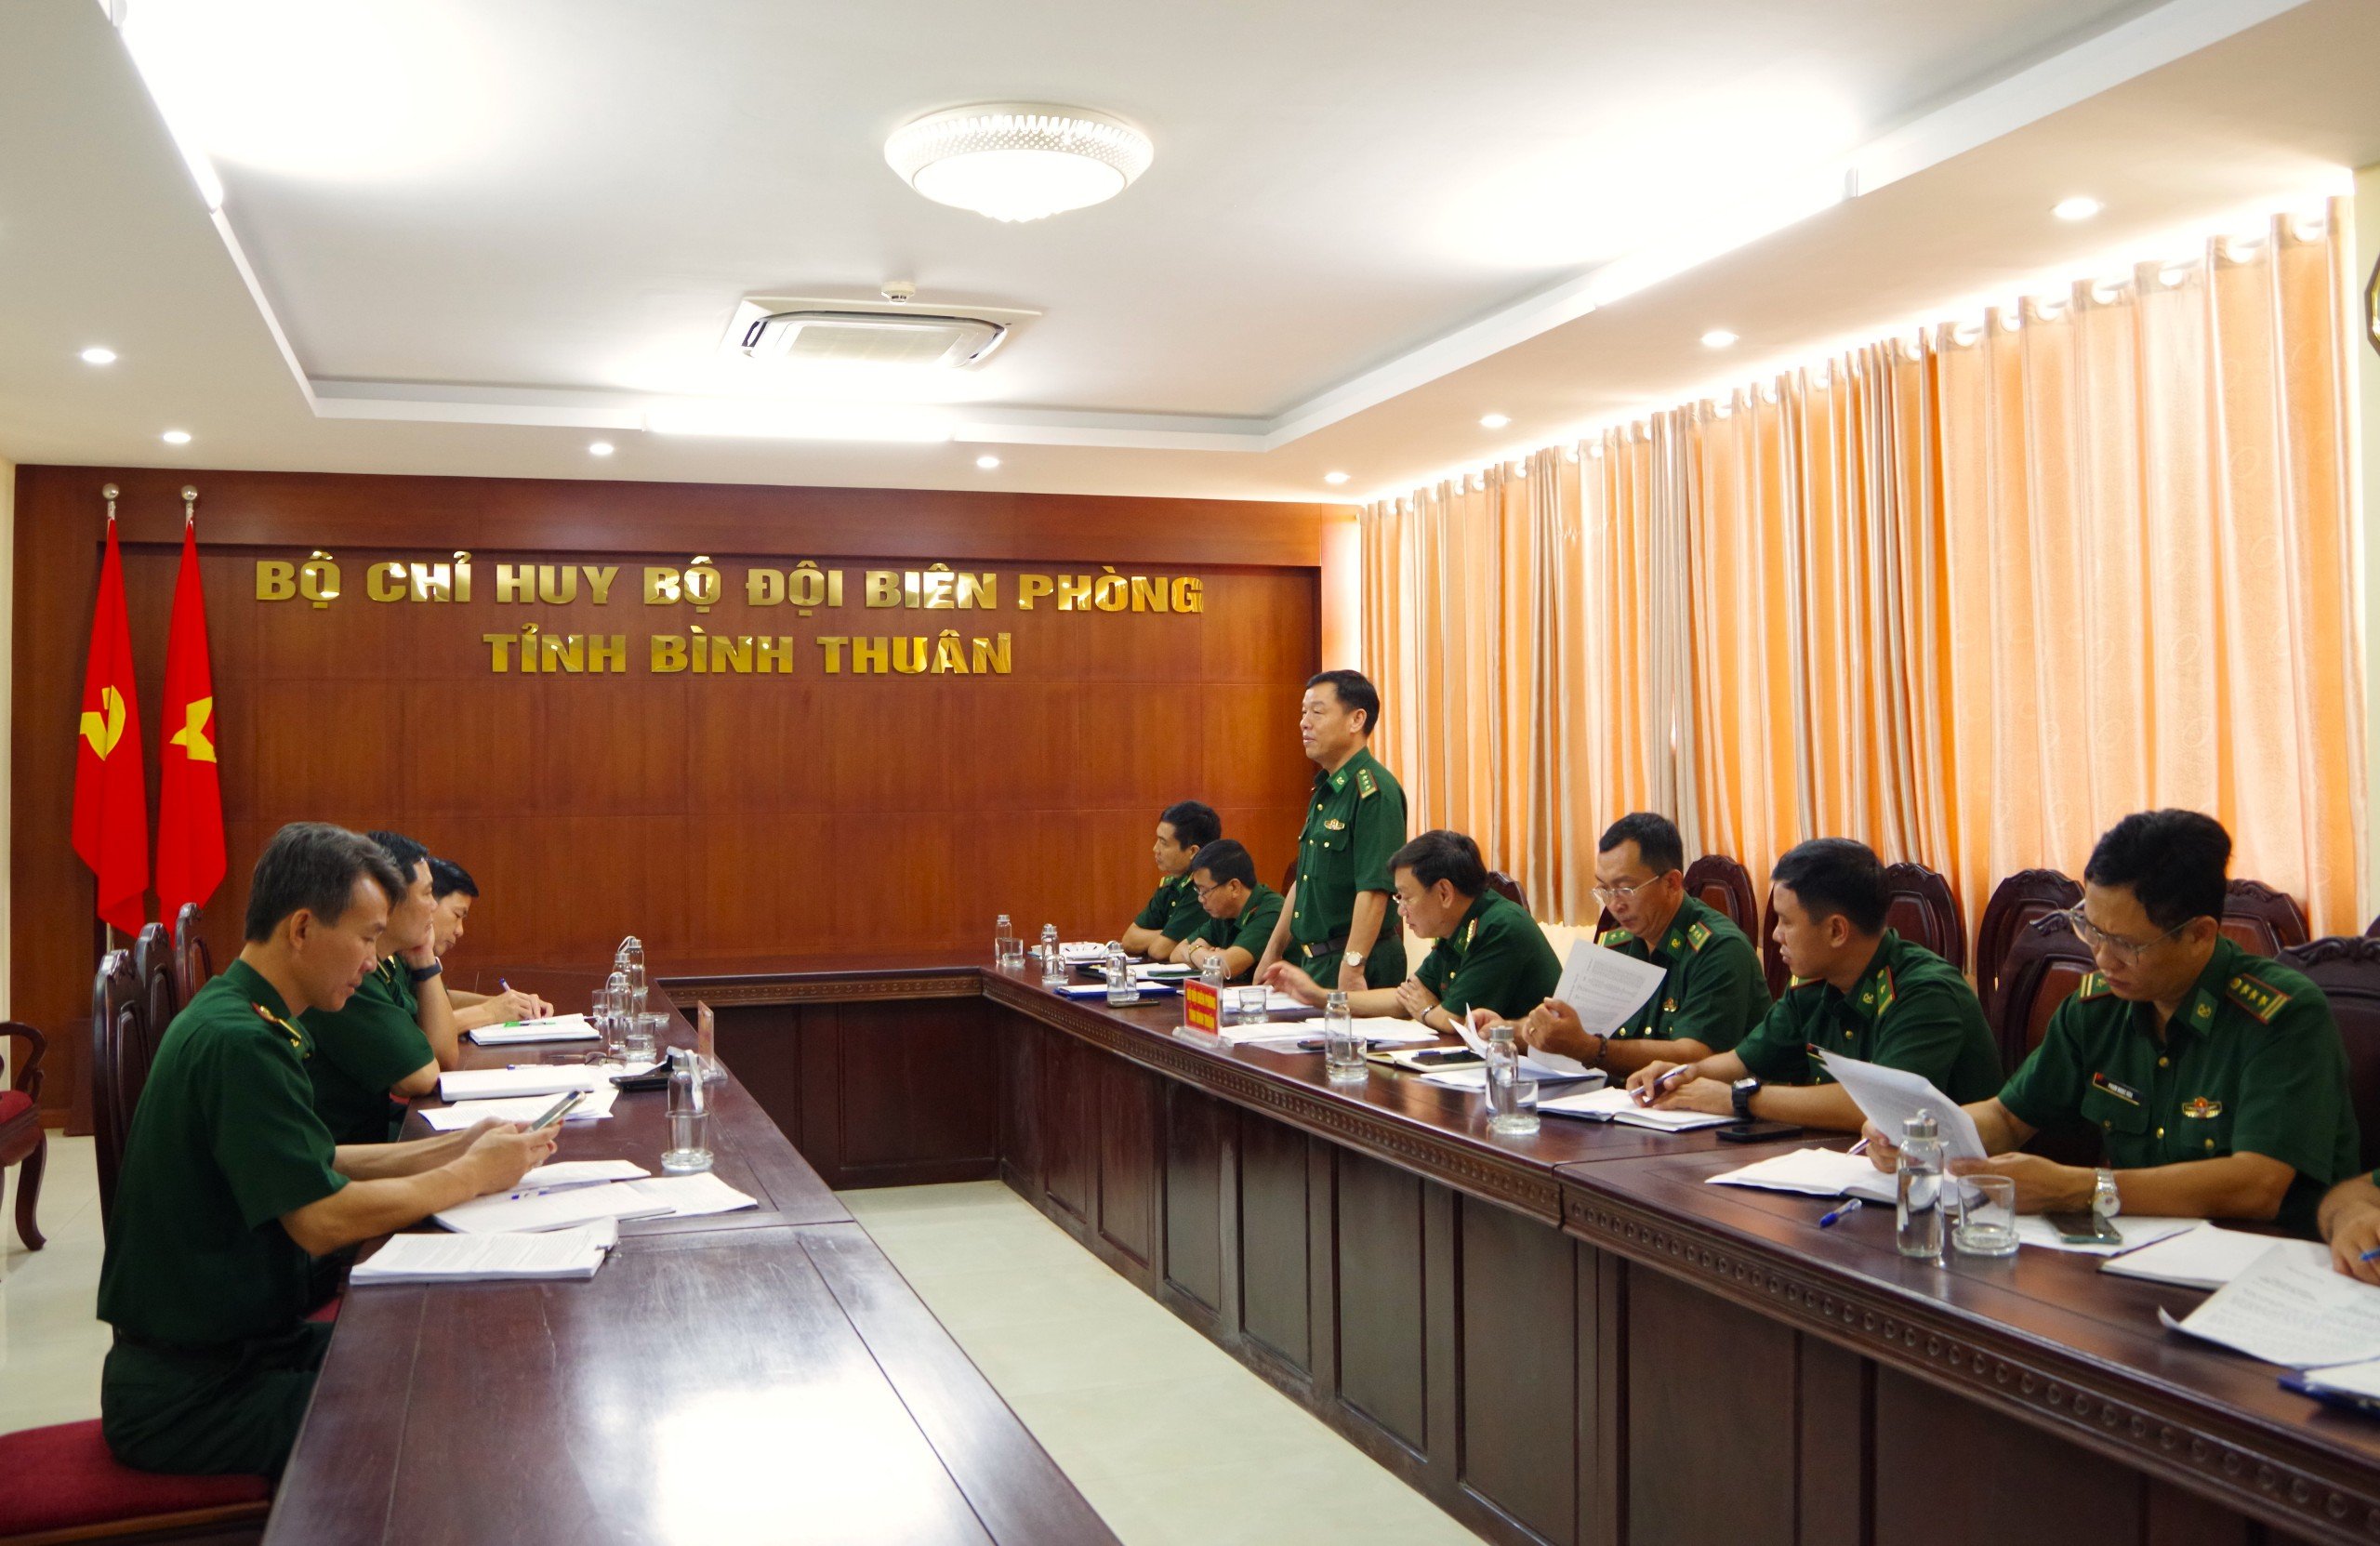 Bộ Chỉ huy Bộ đội Biên phòng tỉnh Bình Thuận và Bà Rịa - Vũng Tàu có buổi làm việc về xử lý các tàu cá bị mất kết nối giám sát hành trình trên 10 ngày.